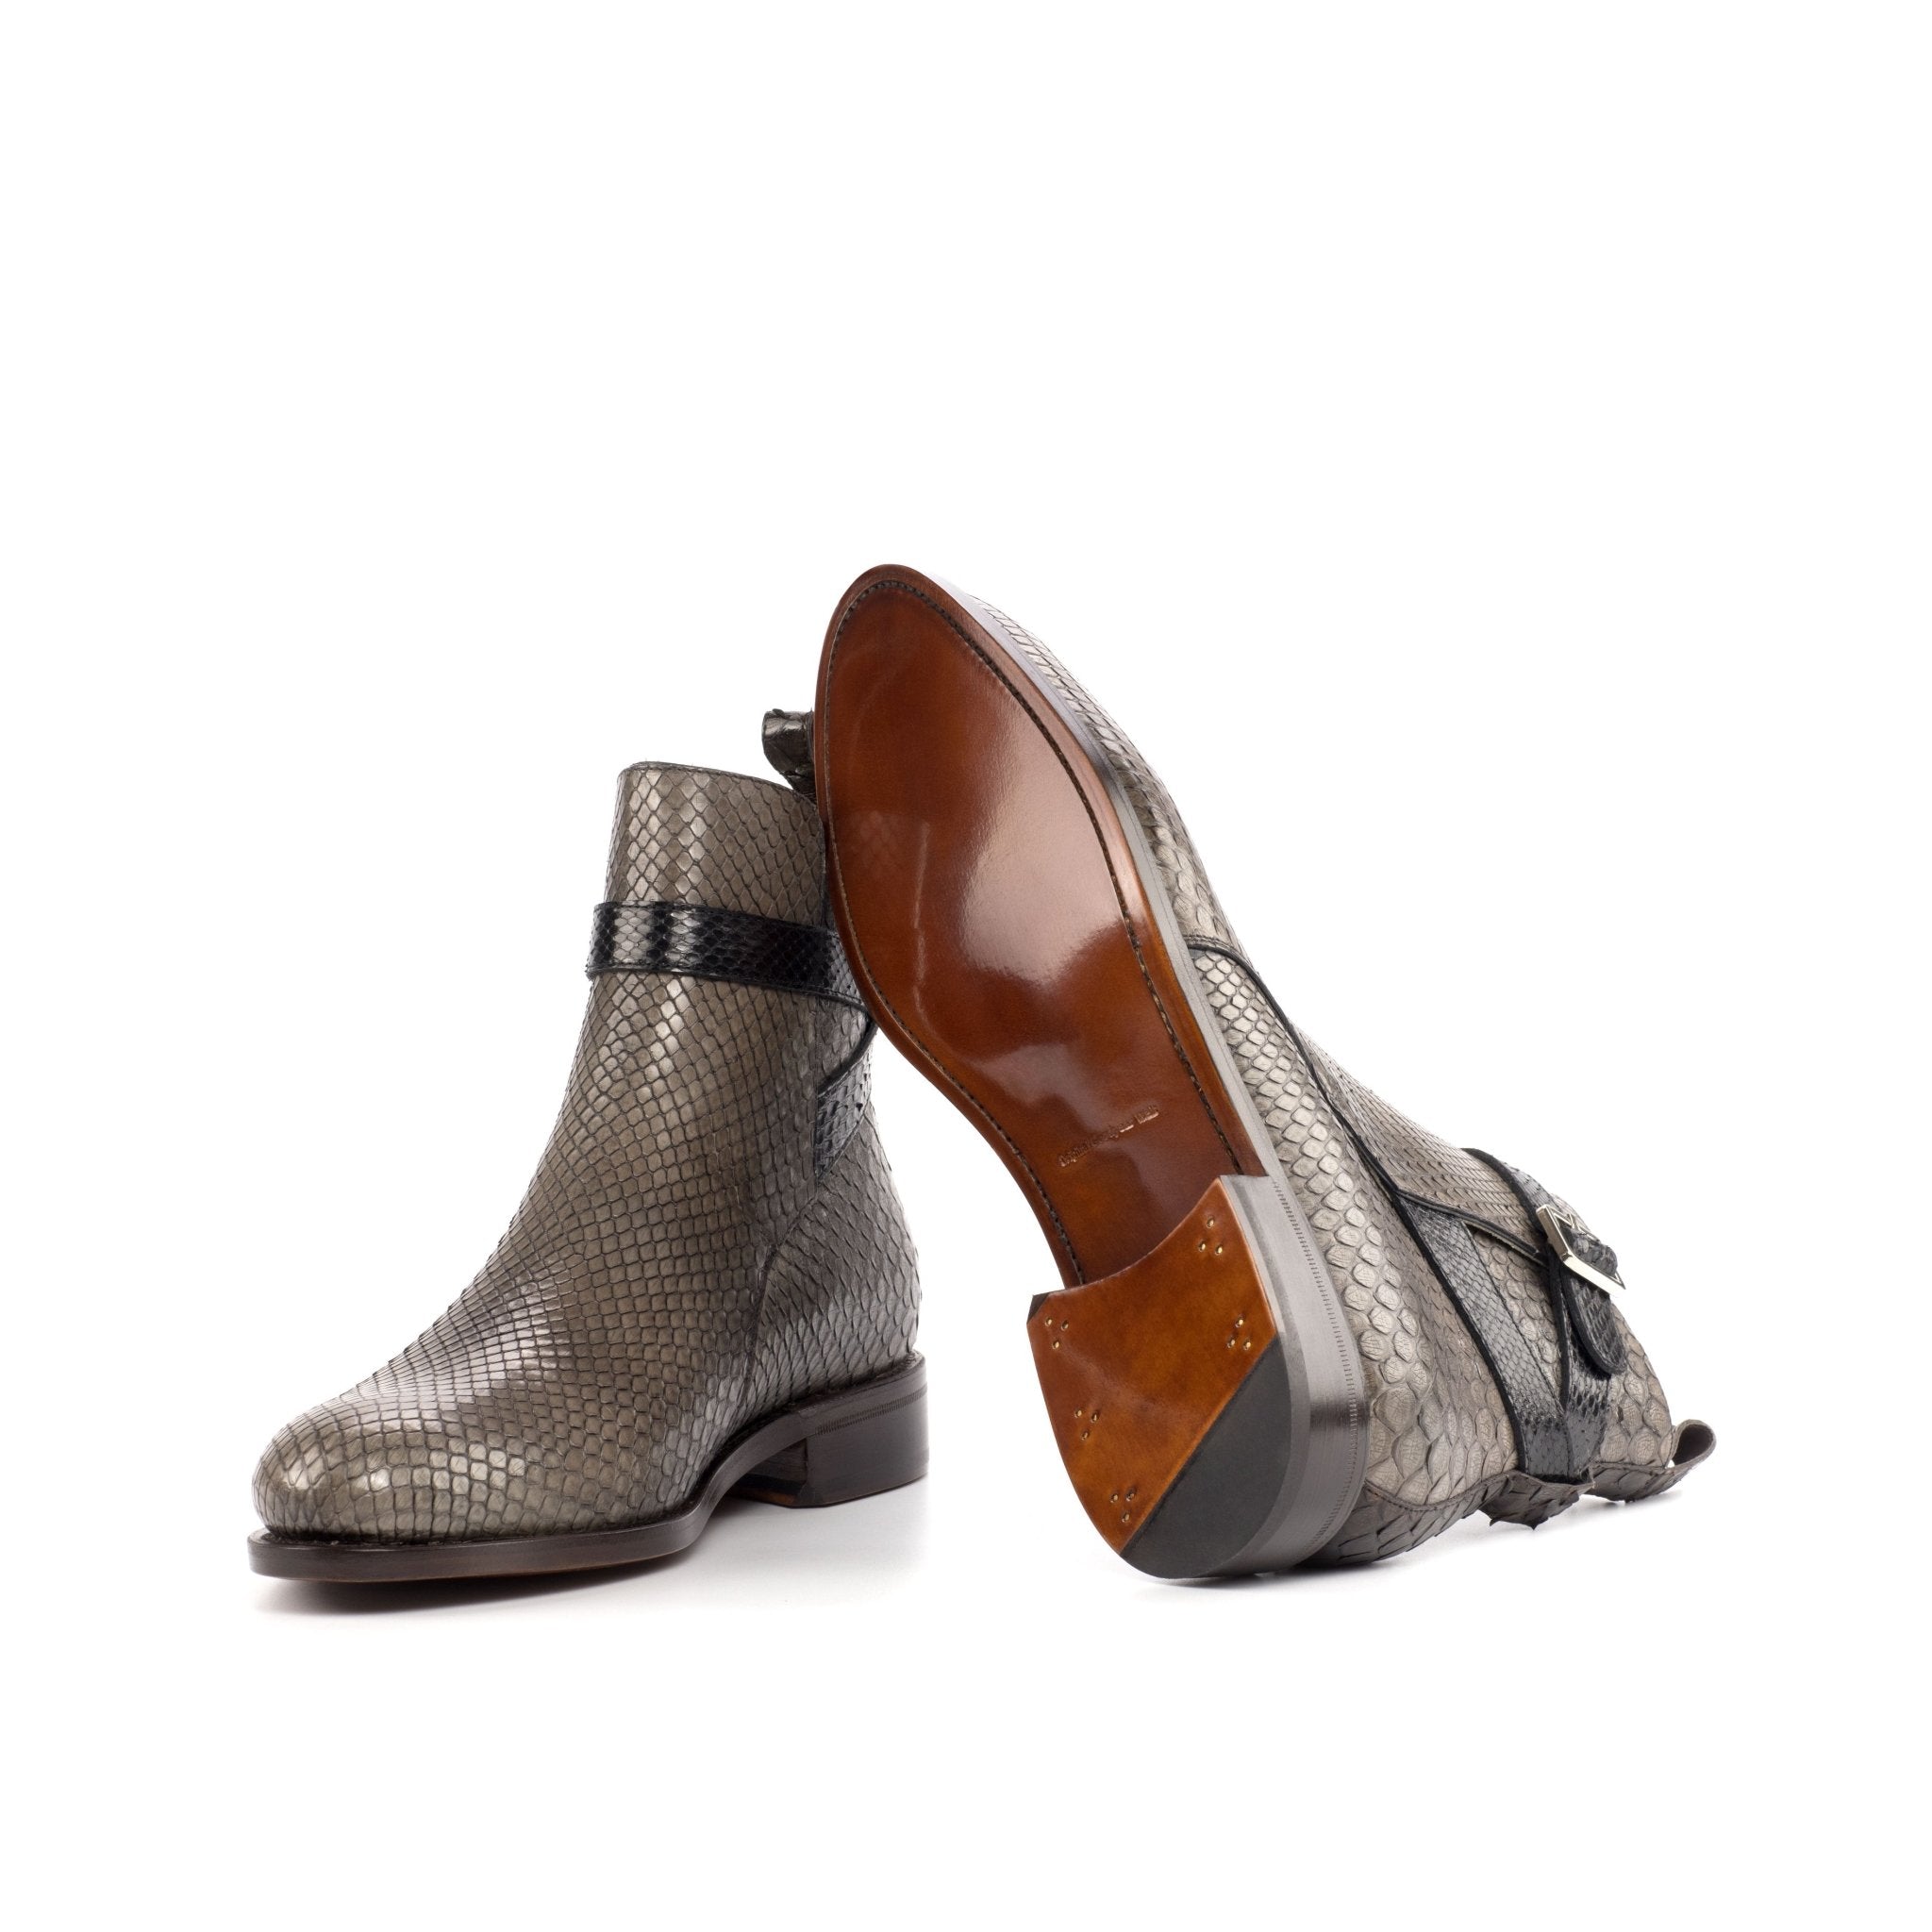 Men's Grey and Black Python Jodhpur Boots - Maison de Kingsley Couture Harmonie et Fureur Spain